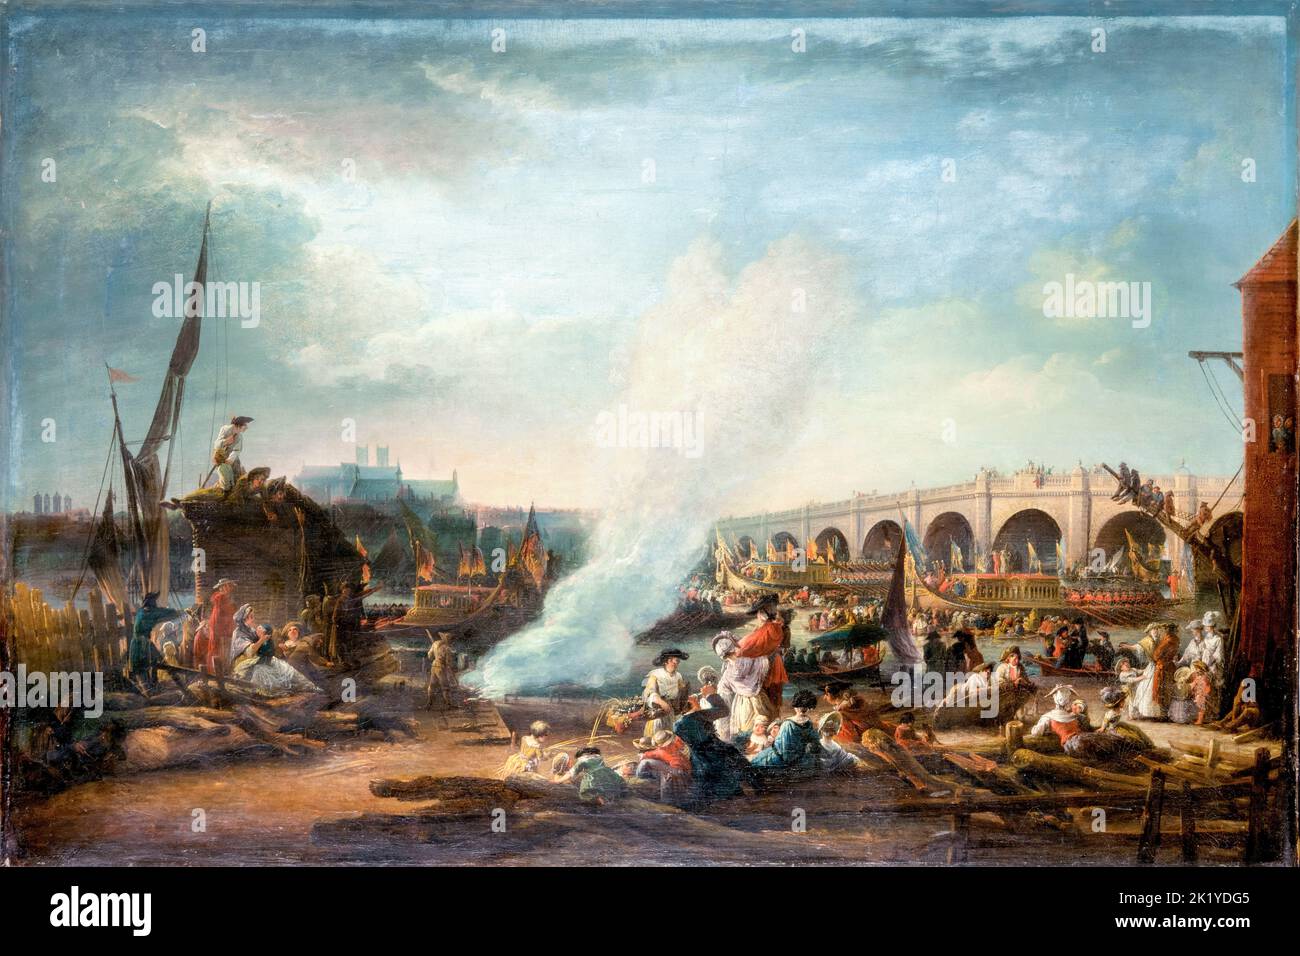 El Puente de Westminster y la Procesión del Támesis del Rey Christian VII de Dinamarca en 1769, pintando al óleo sobre lienzo de Elias Martin, 1768-1769 Foto de stock